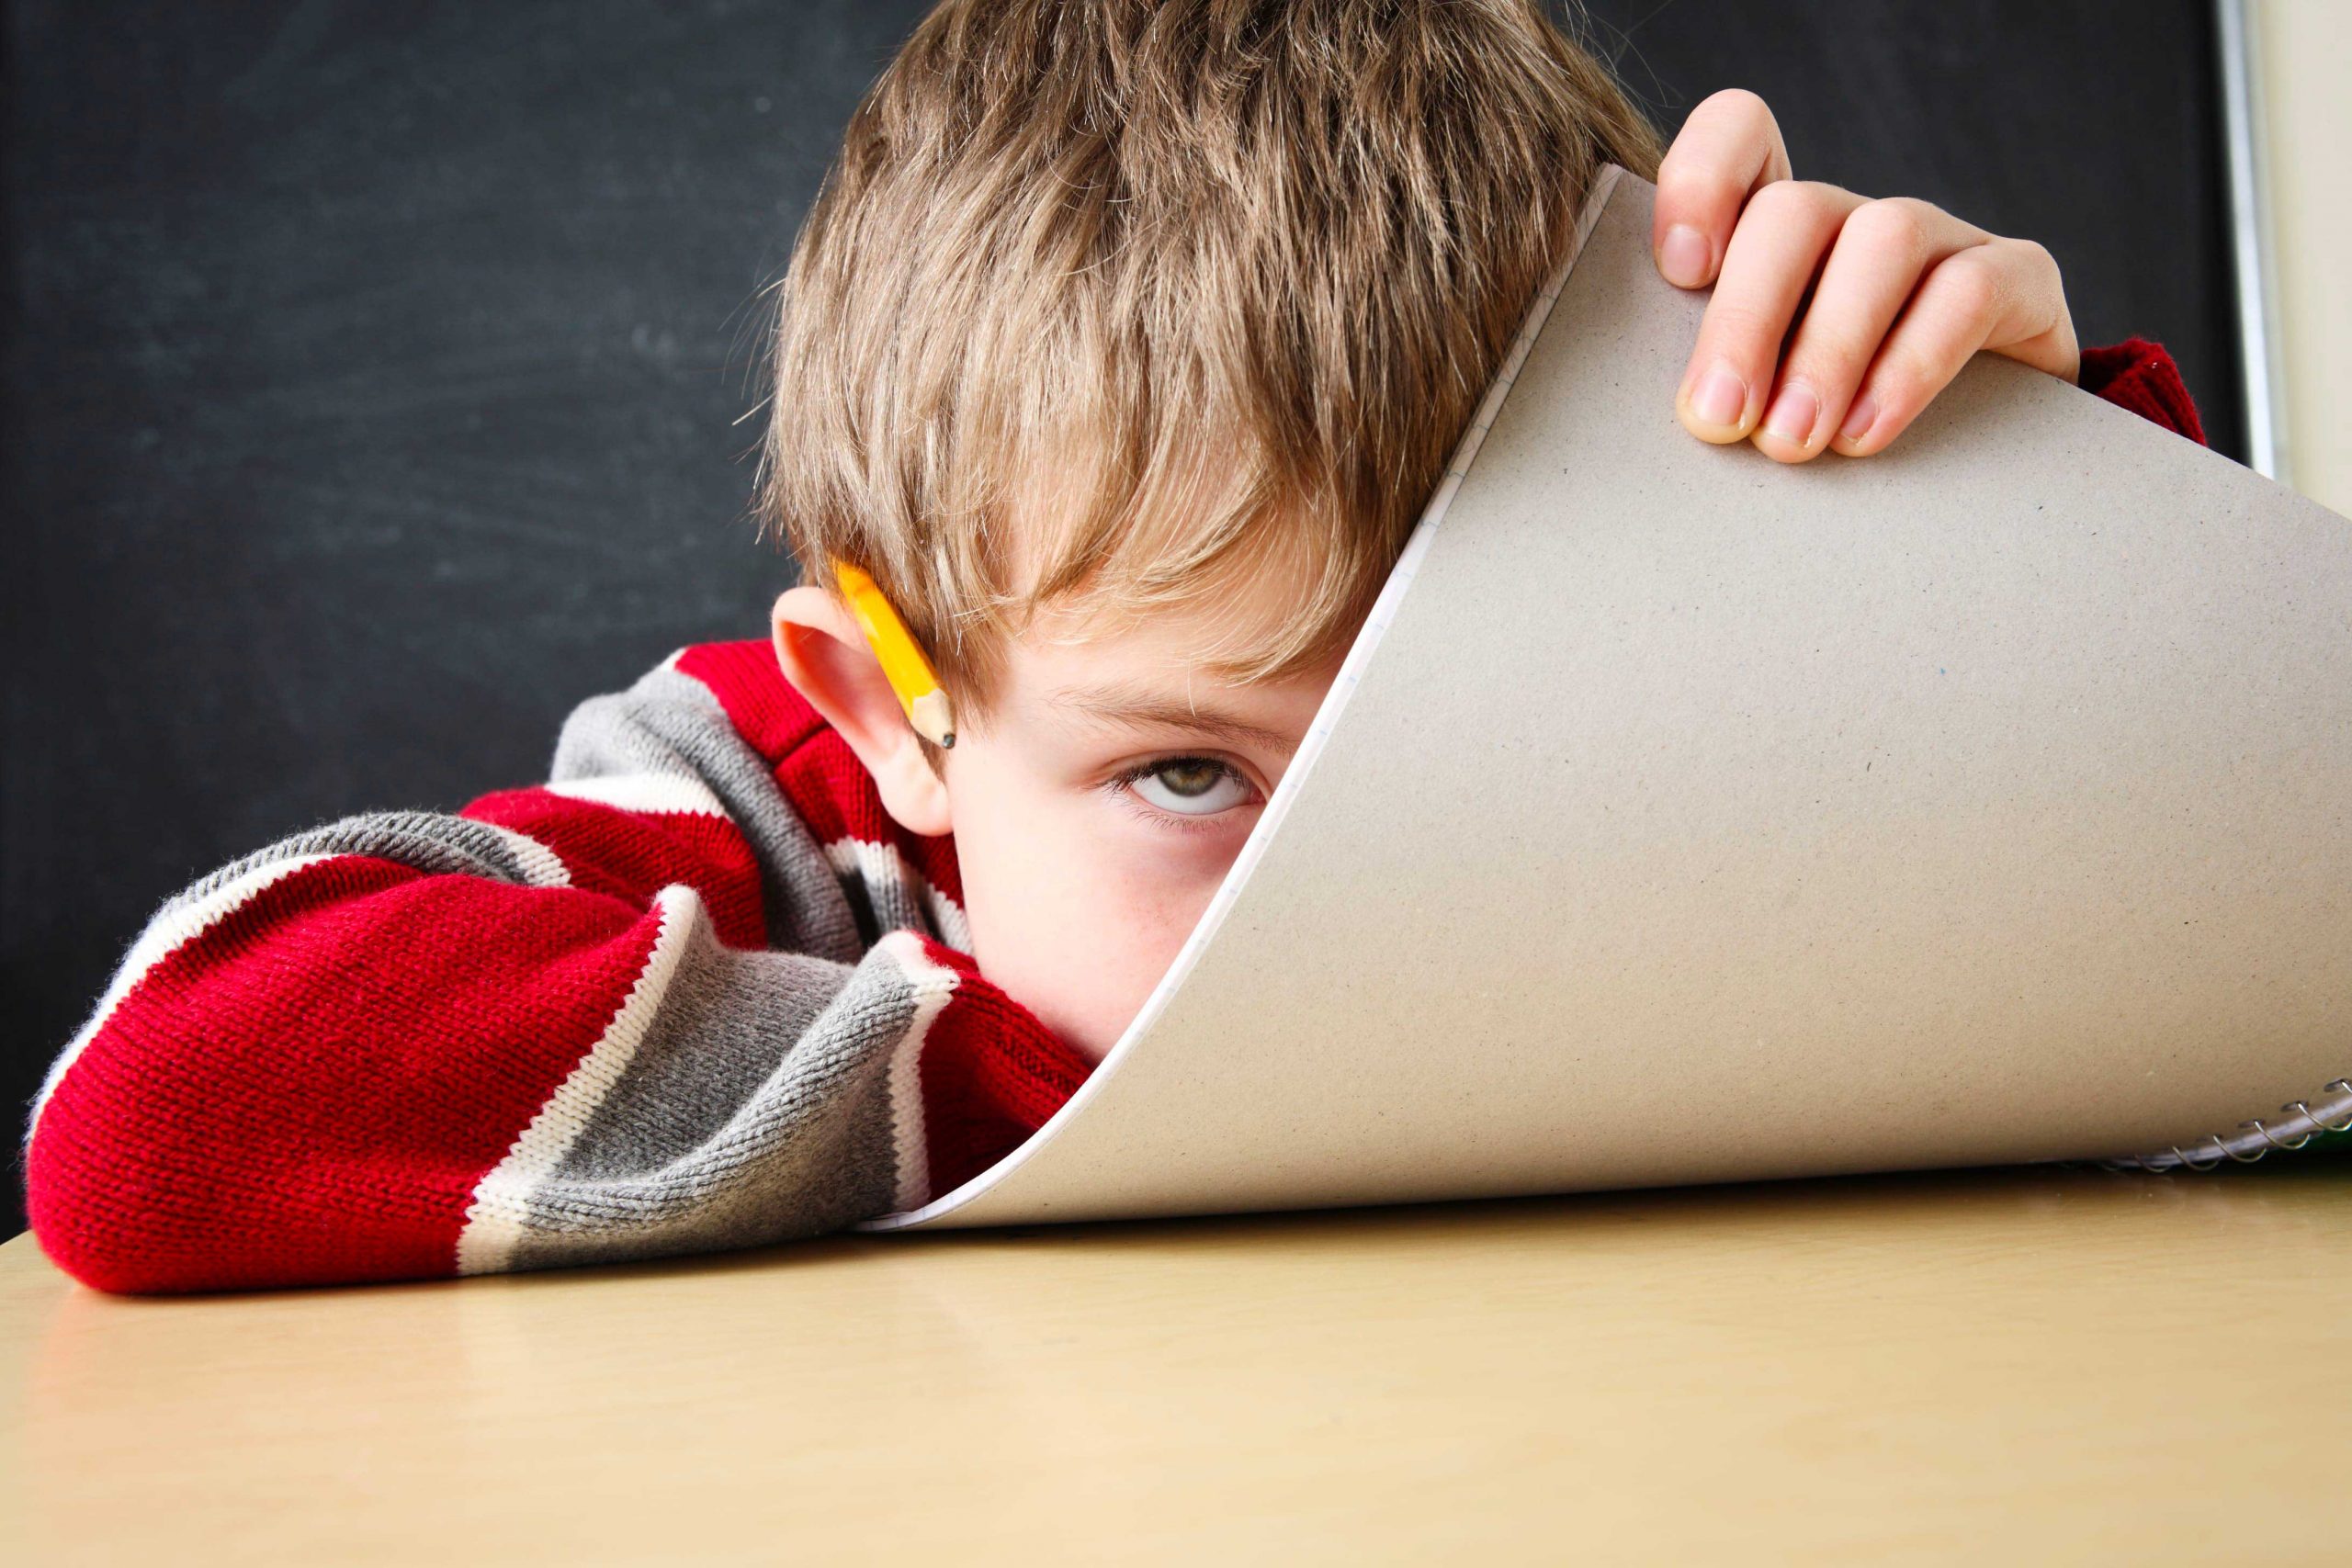 L’ADHD nei bambini: cosa è e come si riconosce